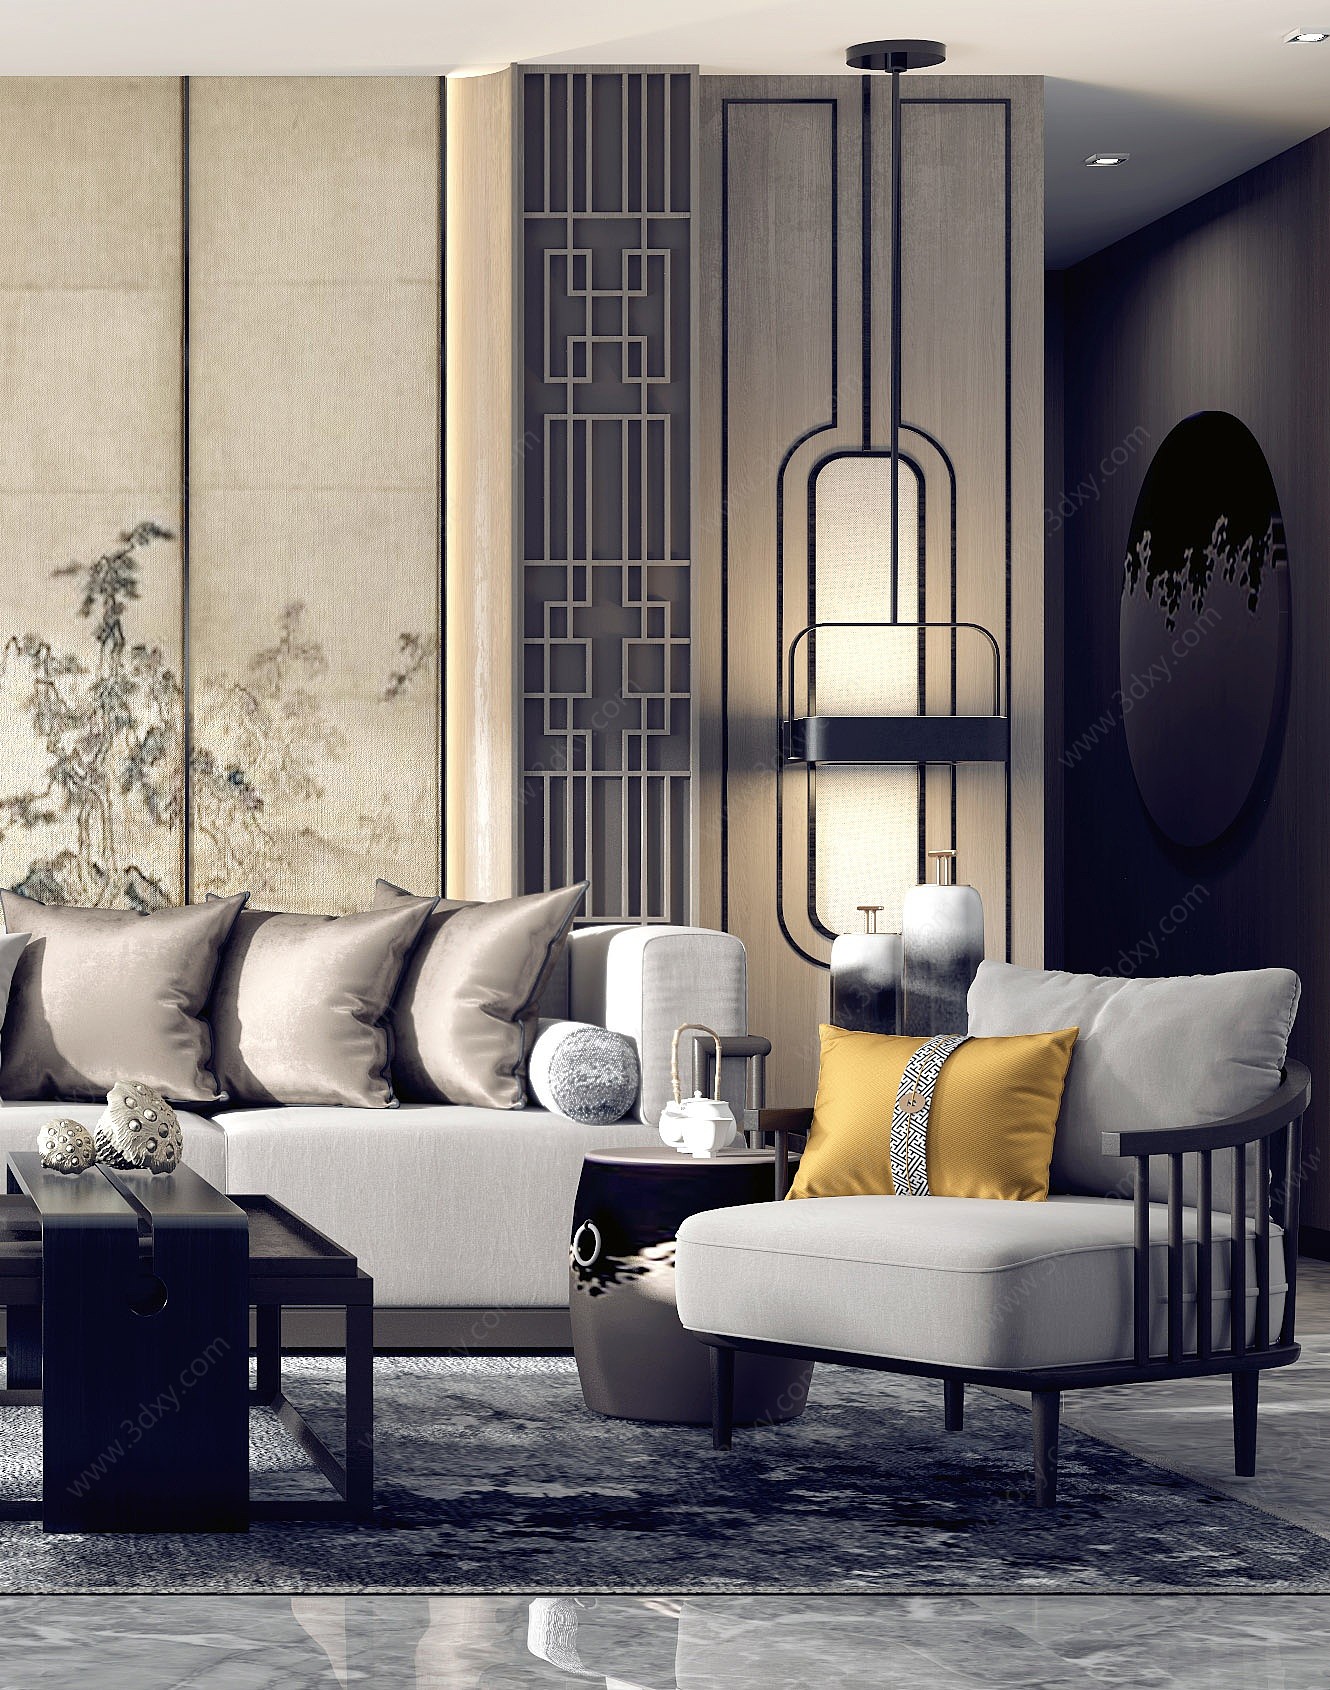 新中式客厅沙发茶几组合3D模型